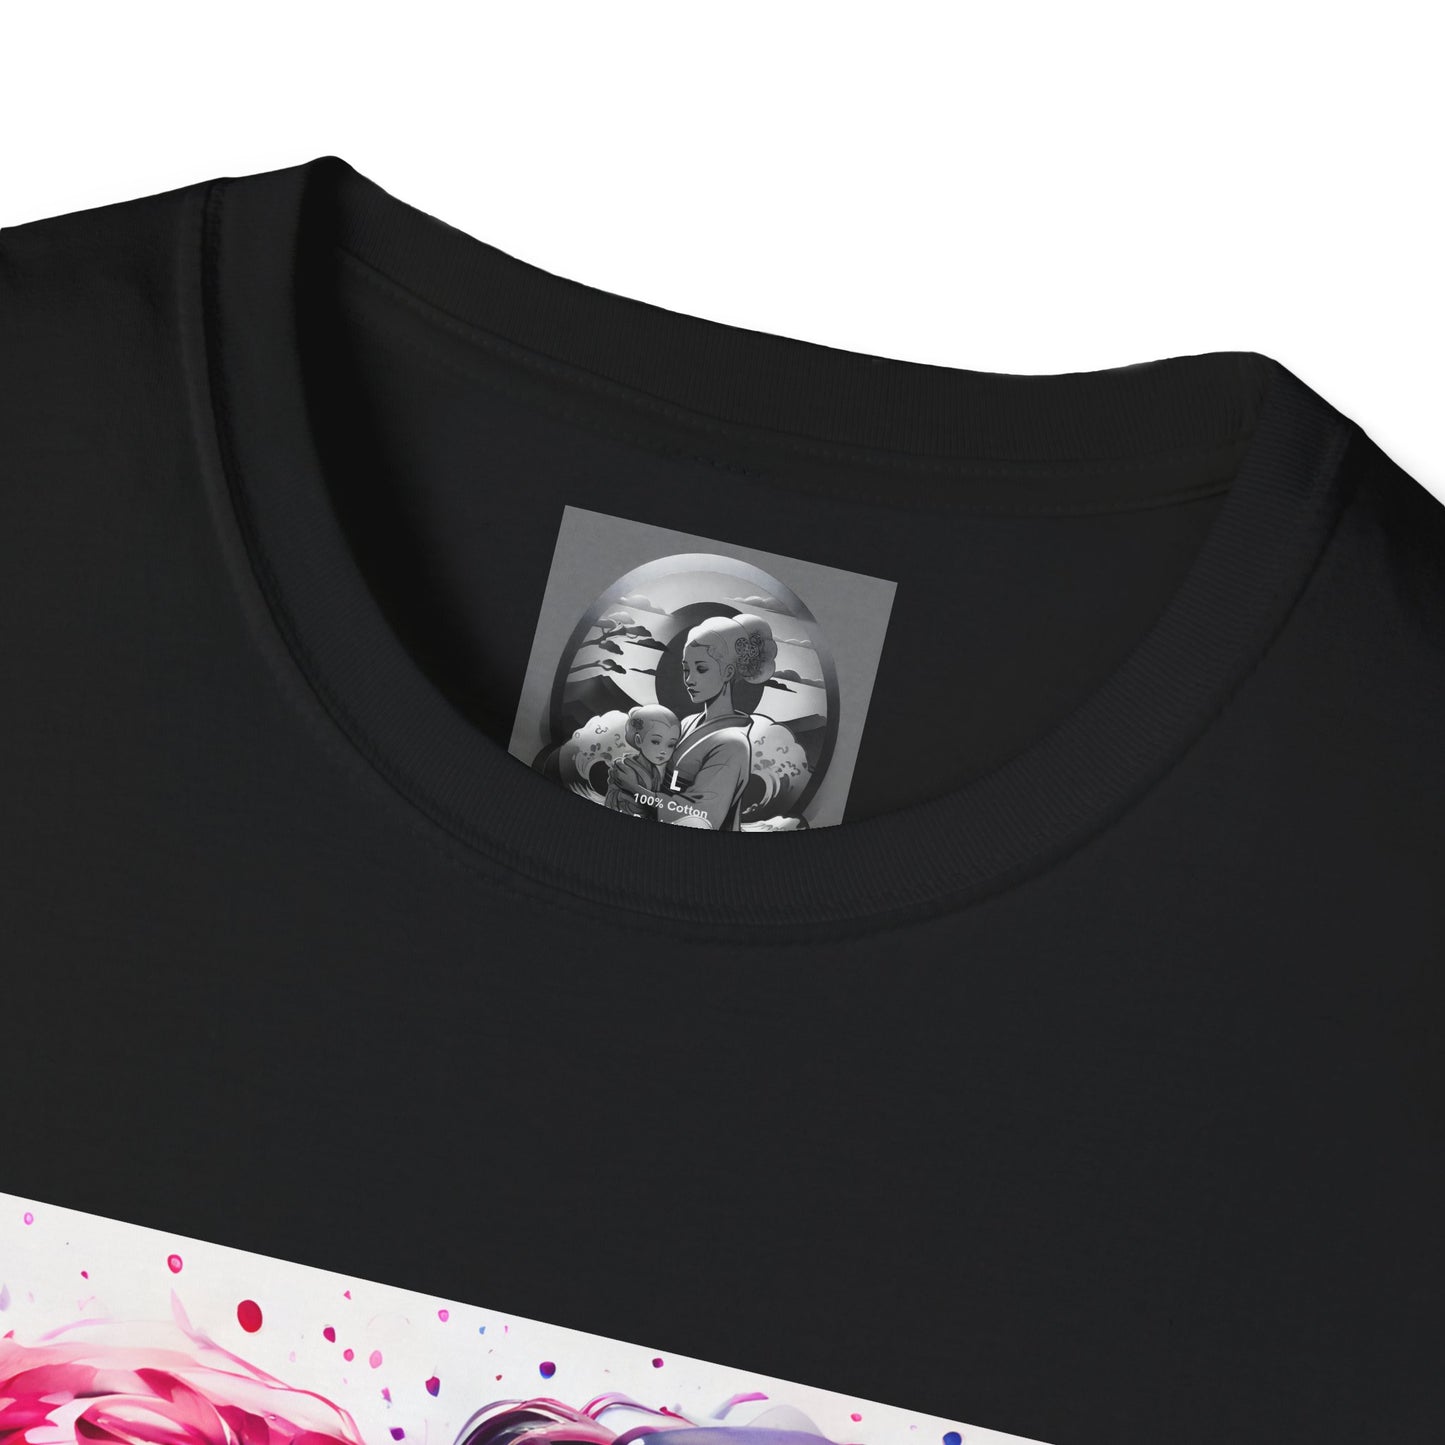 "Te Amo" Unisex Softstyle T-Shirt